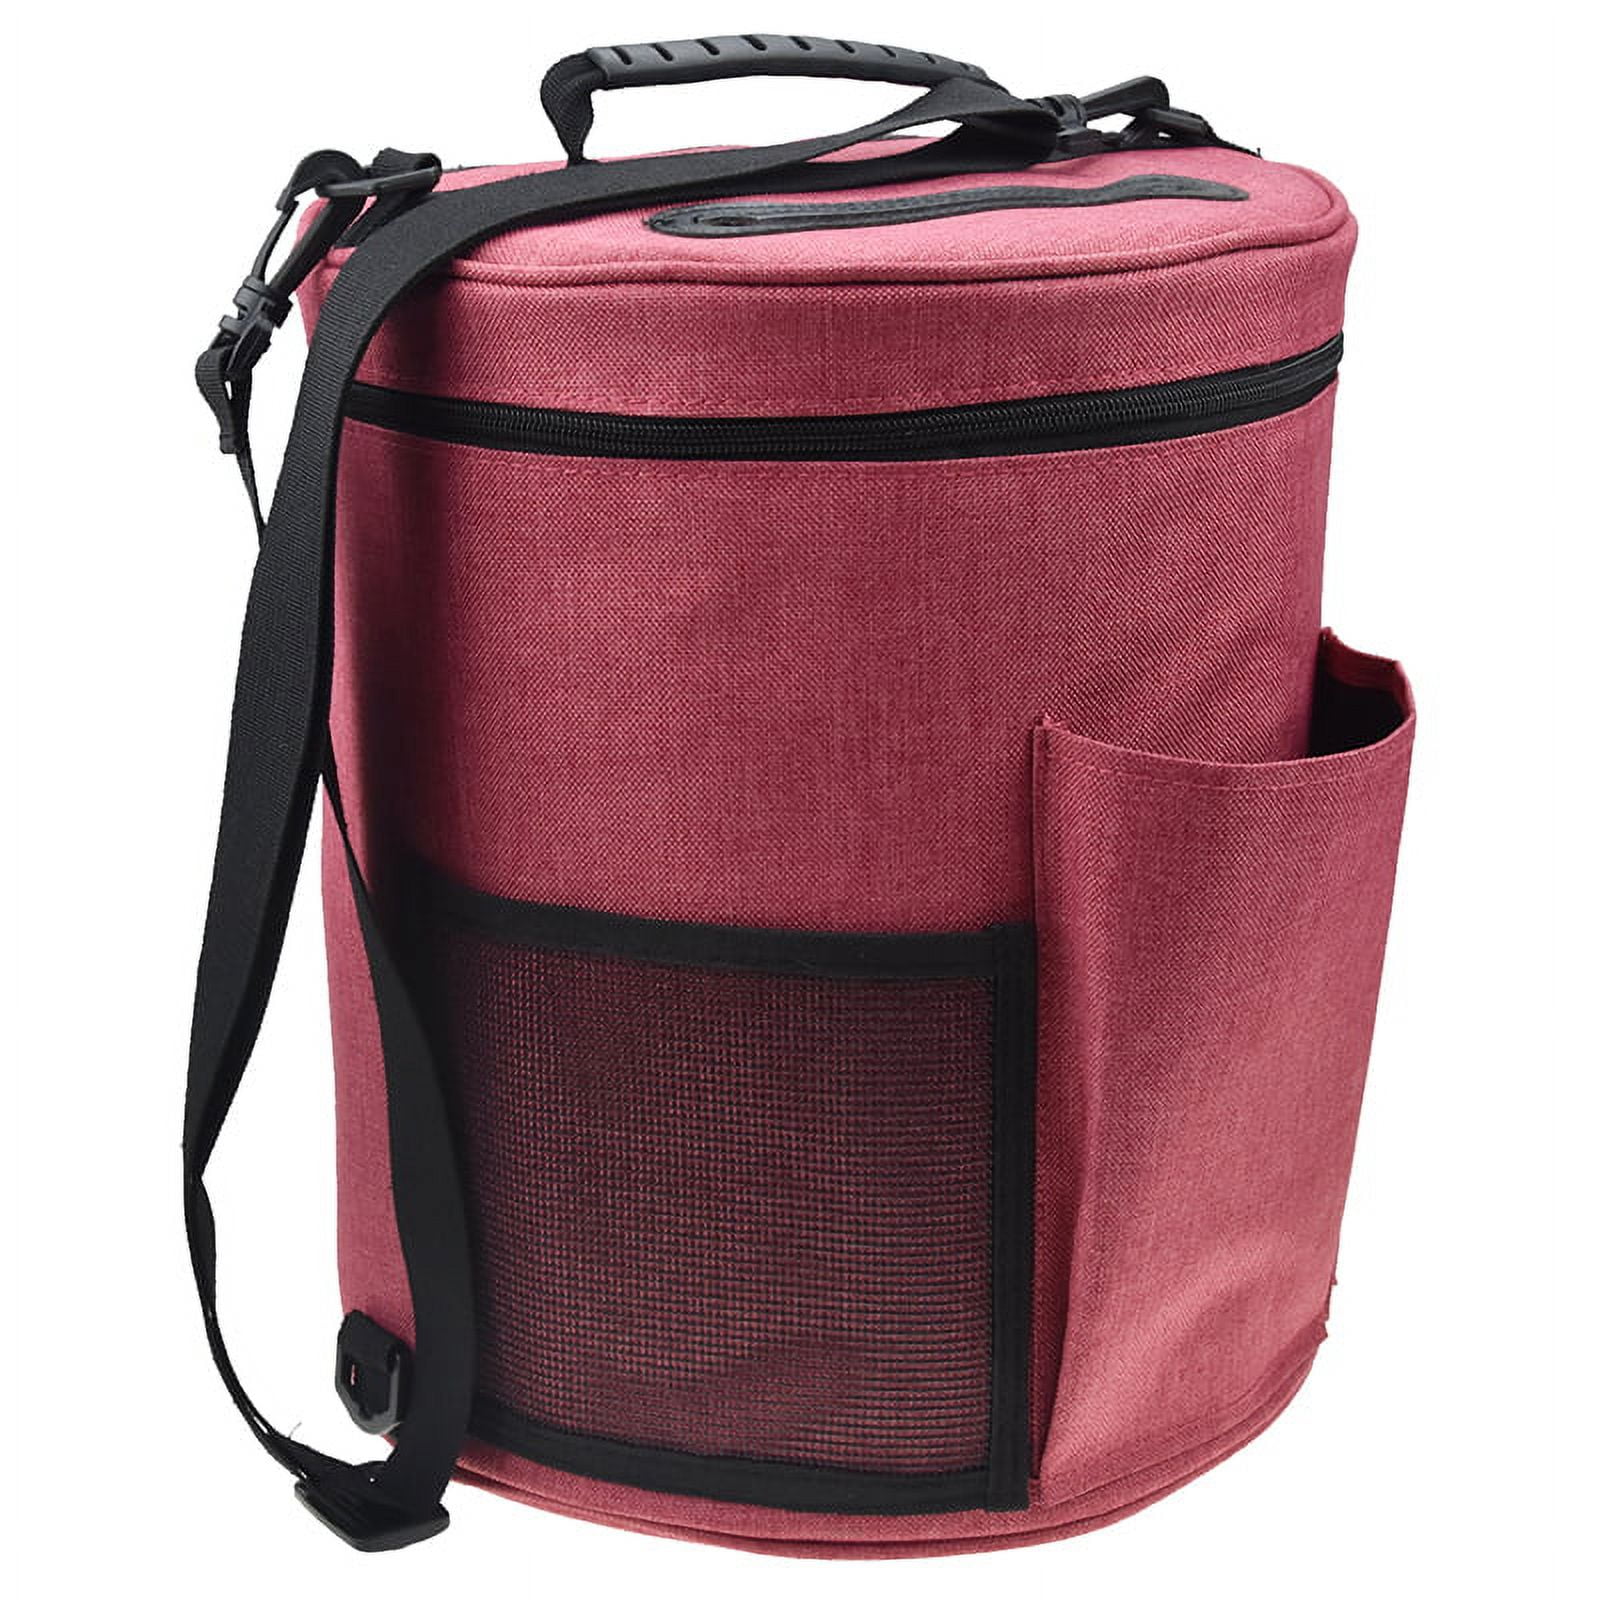 Amerteer Knitting Bag for Yarn Storage, Portable Crochet Tote Bag